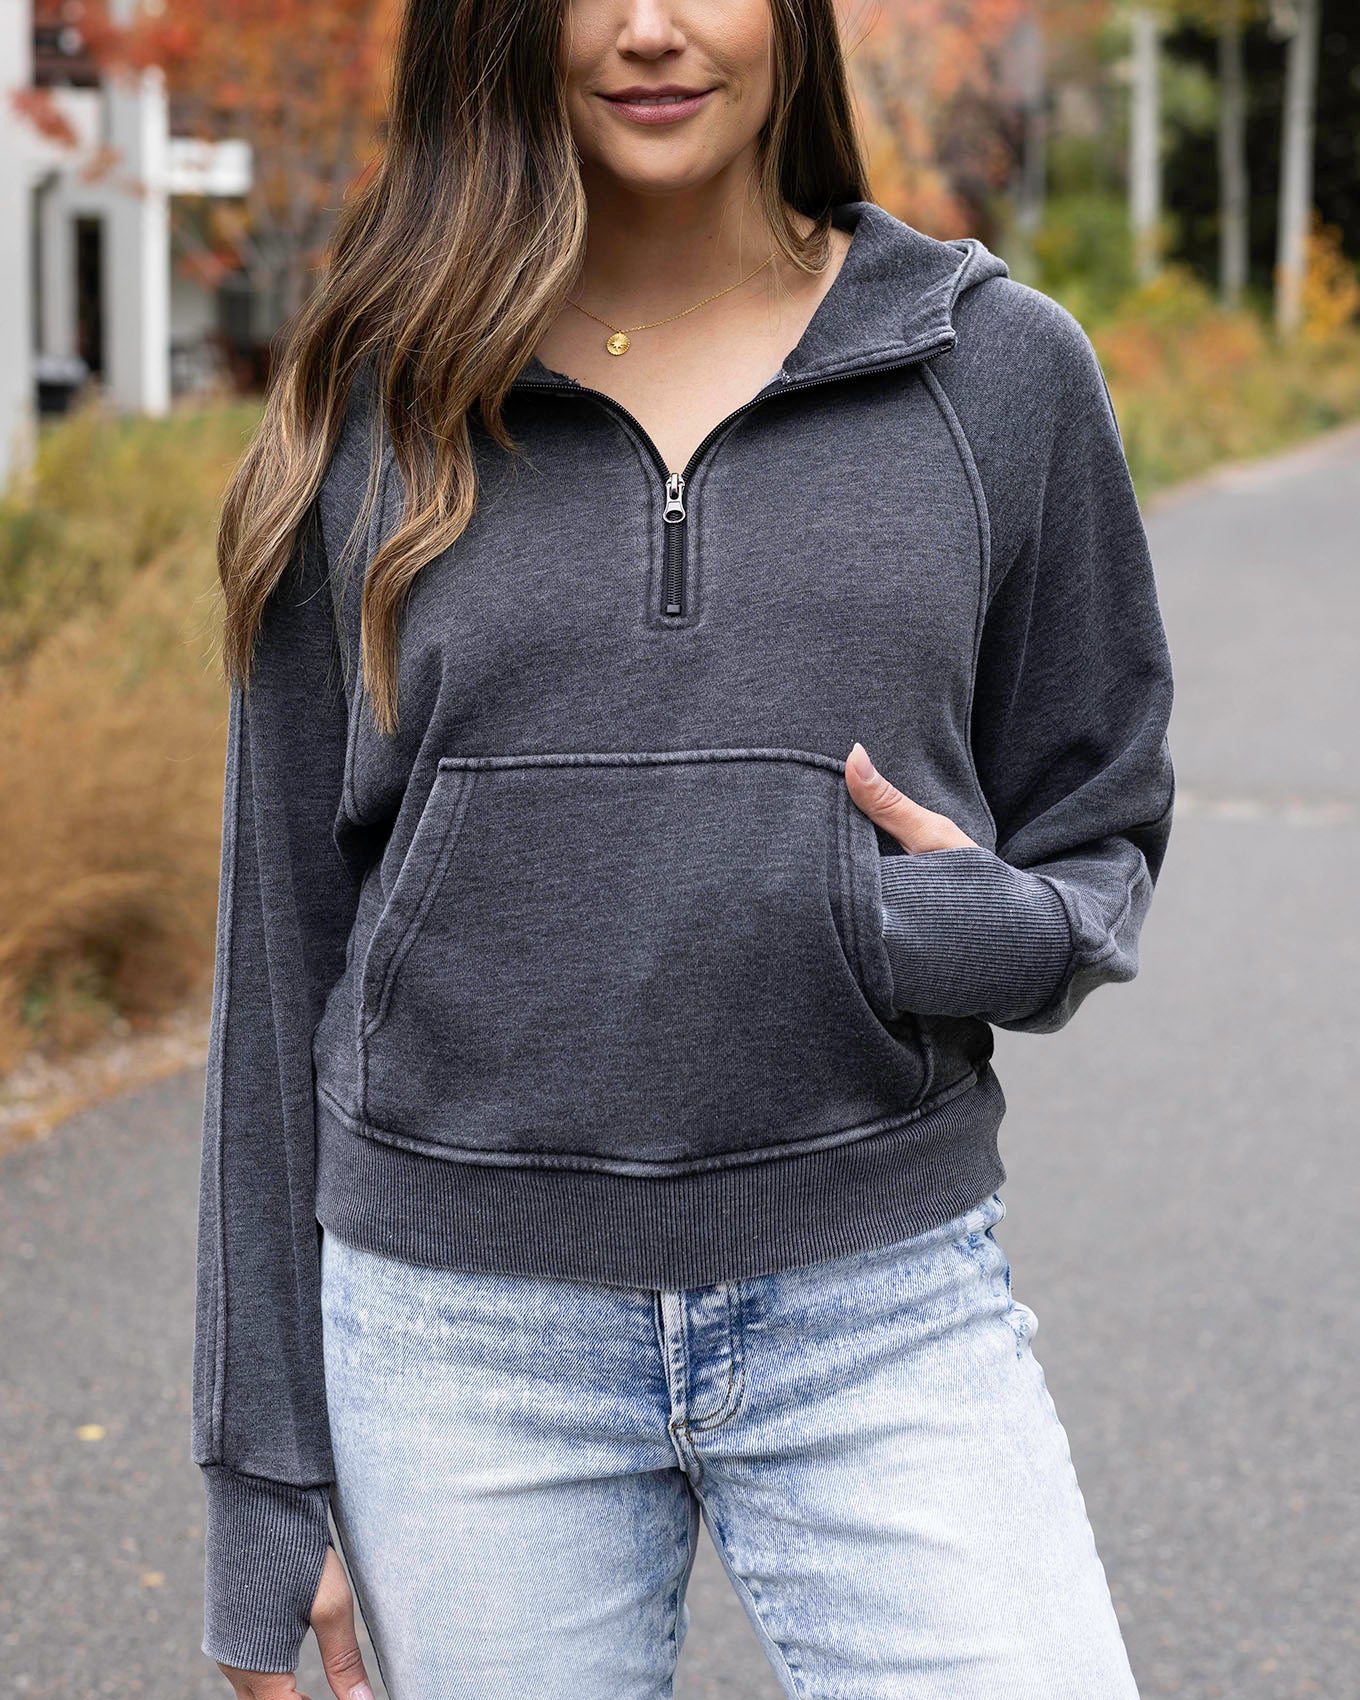 Women TEK GEAR Ultra Soft Fleece 1/4 zip pullover sweatshirt w/pockets  LARGE